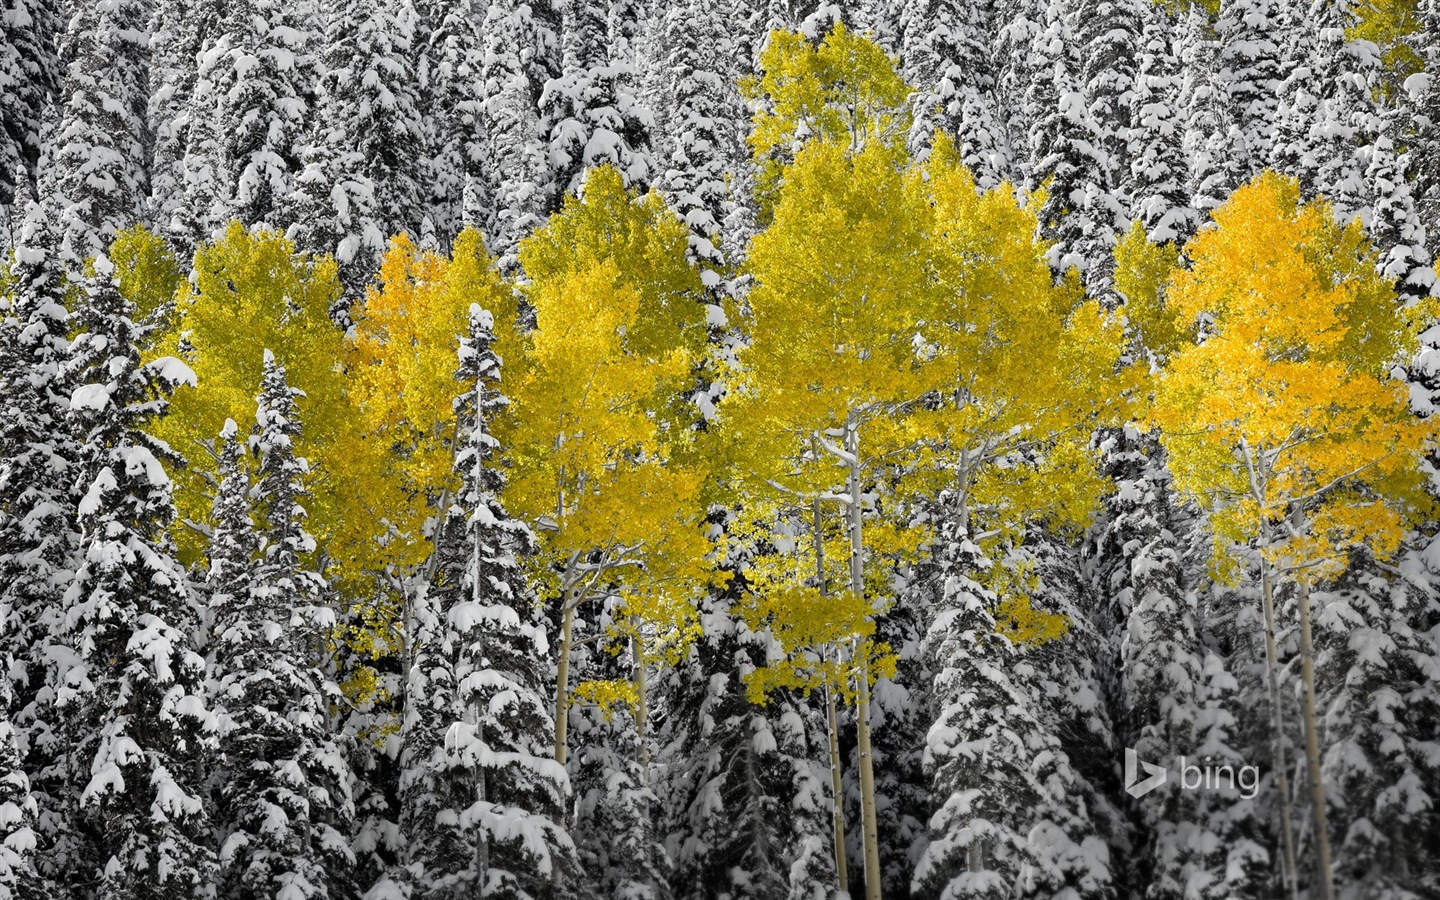 November 2014 Bing Landschaft Hintergrundbilder #5 - 1440x900